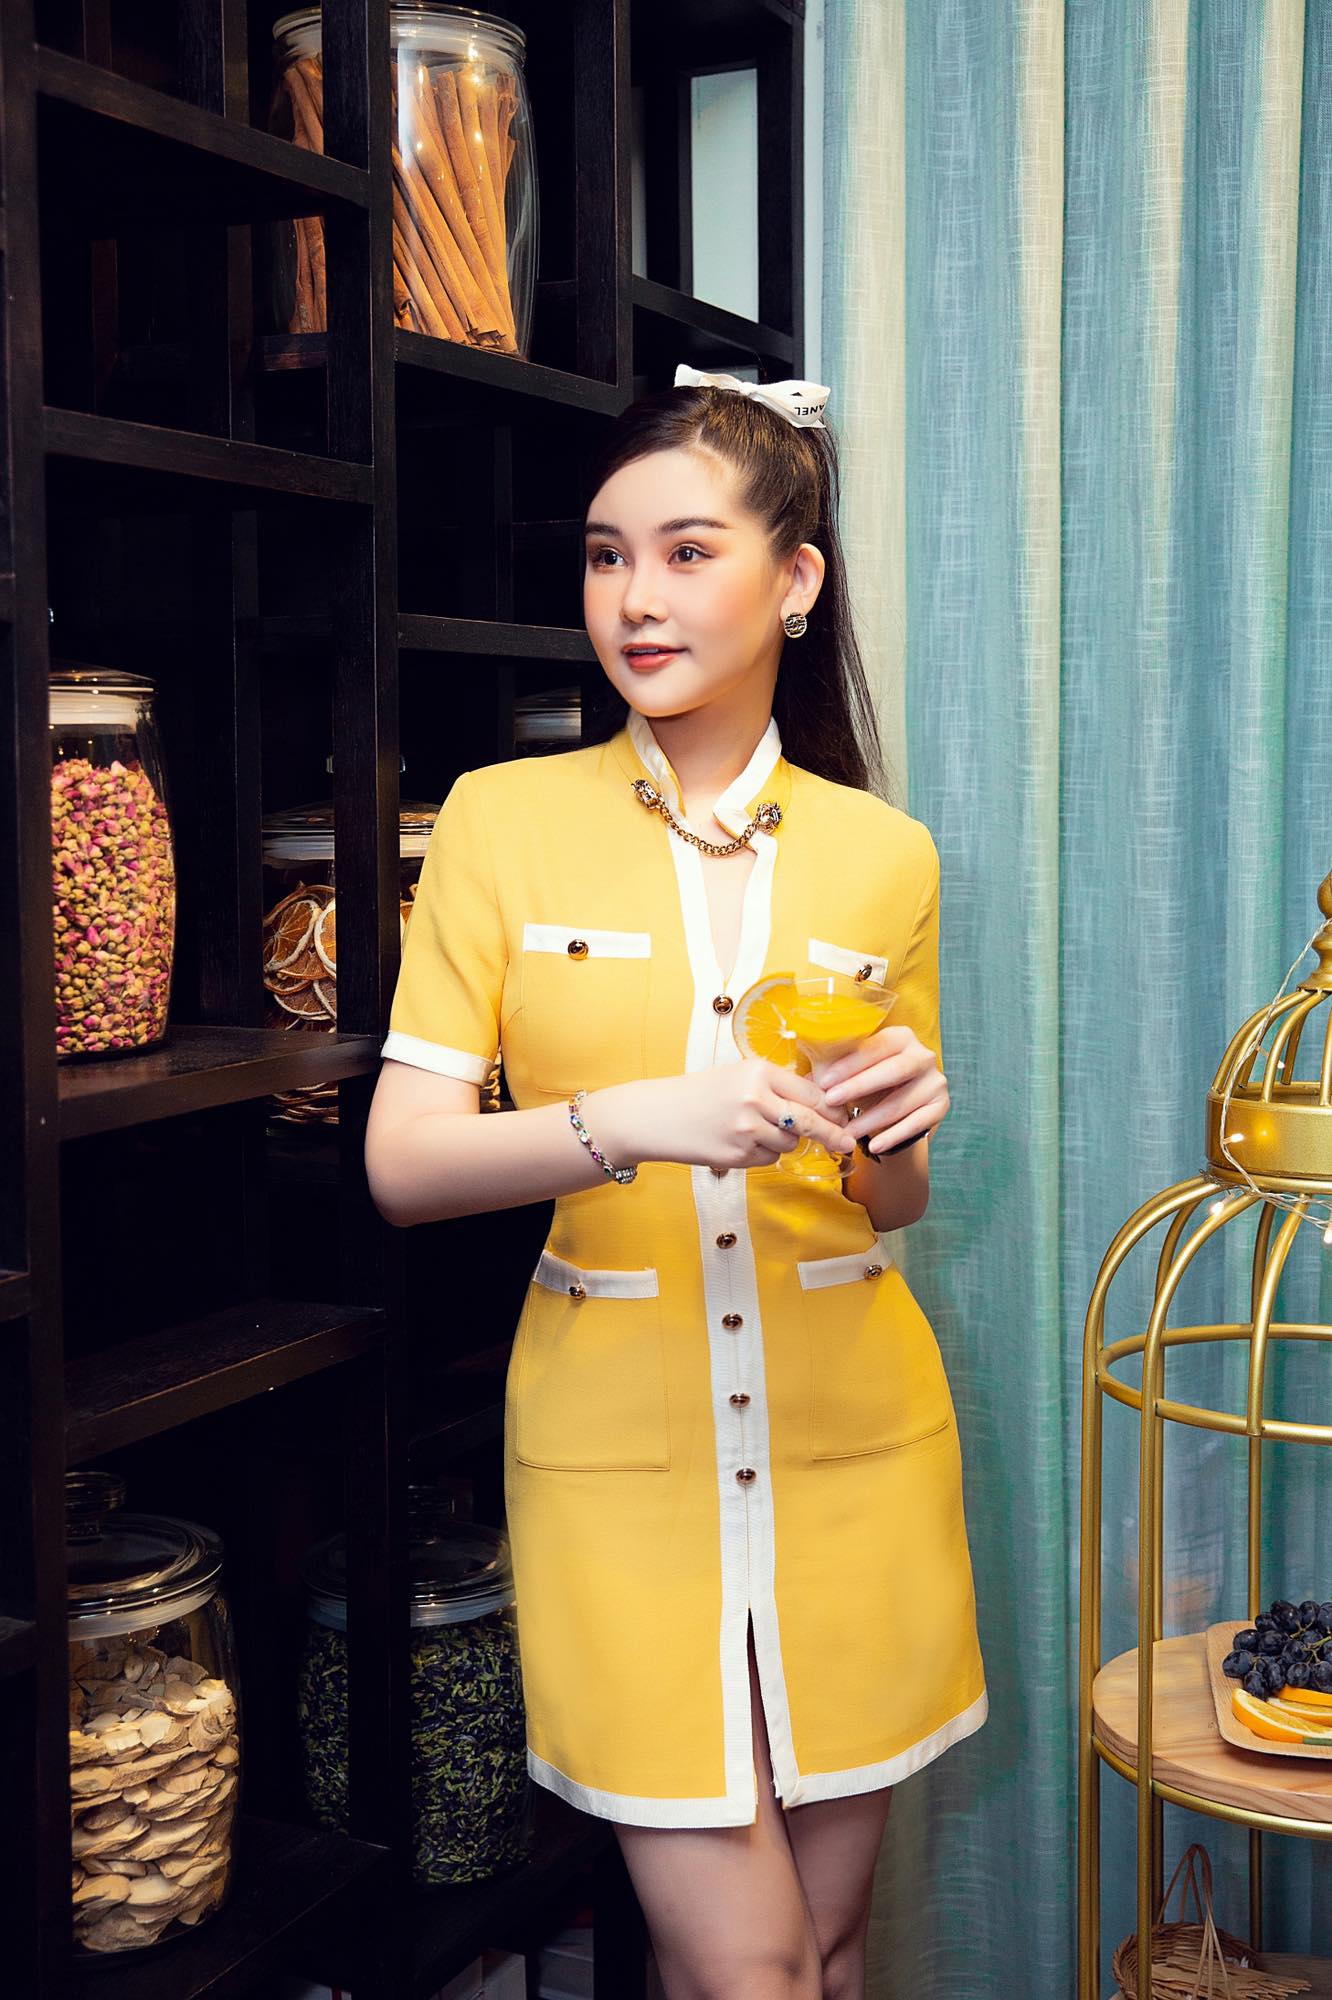 "Nữ giảng viên hot nhất showbiz Việt" quyến rũ với đồ hiệu phủ kín người - 2